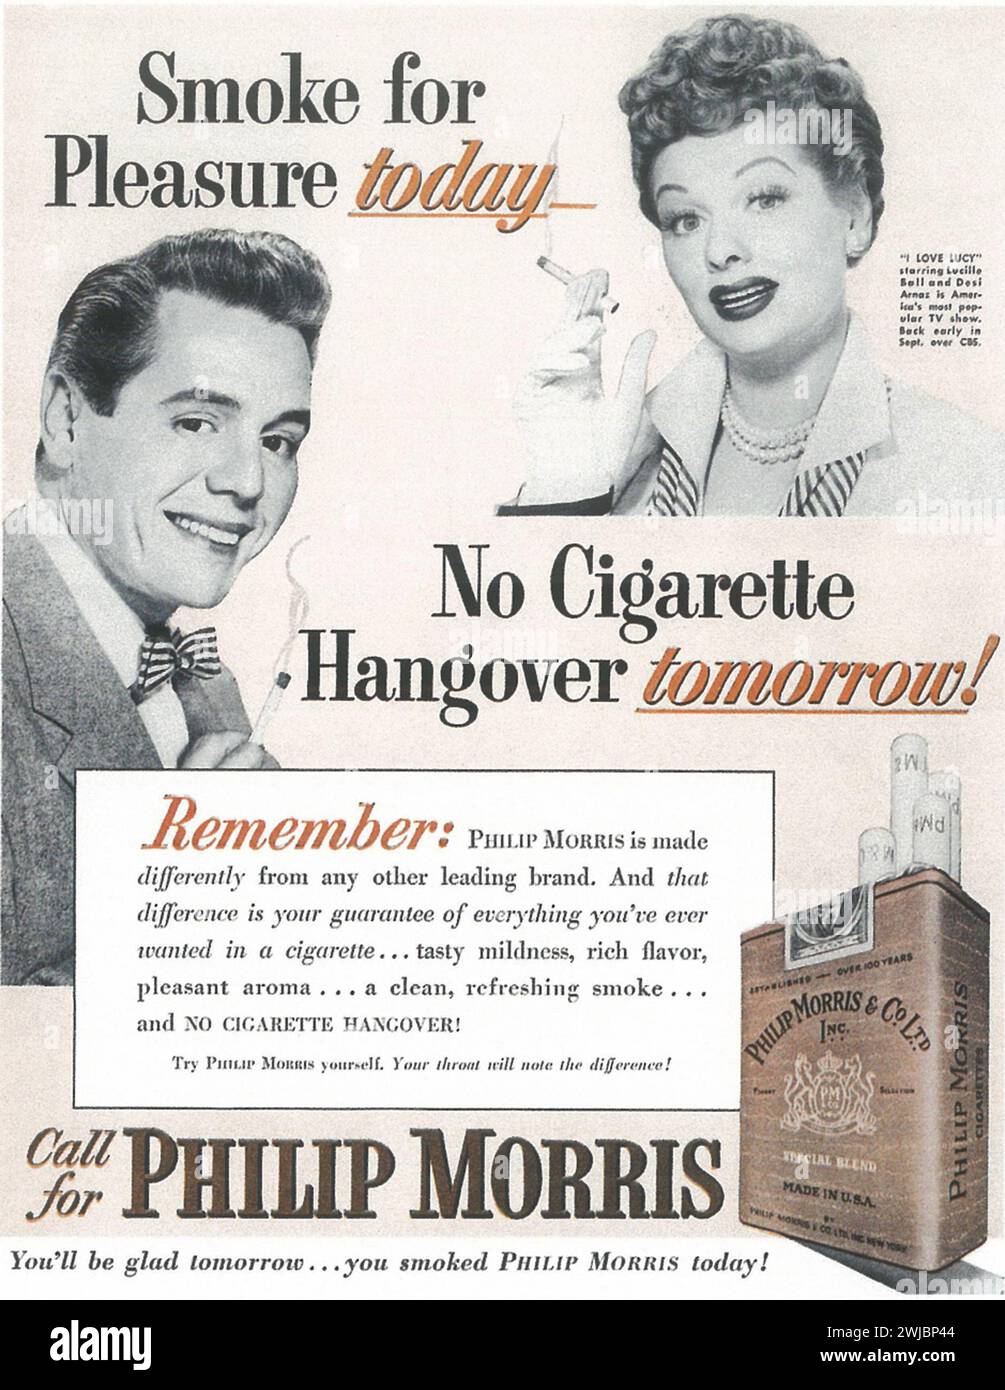 1952 Philip Morris sigarette a stampa. Fumo per piacere today...no sbornia di sigarette domani. Chiama Philip Morris. Foto Stock